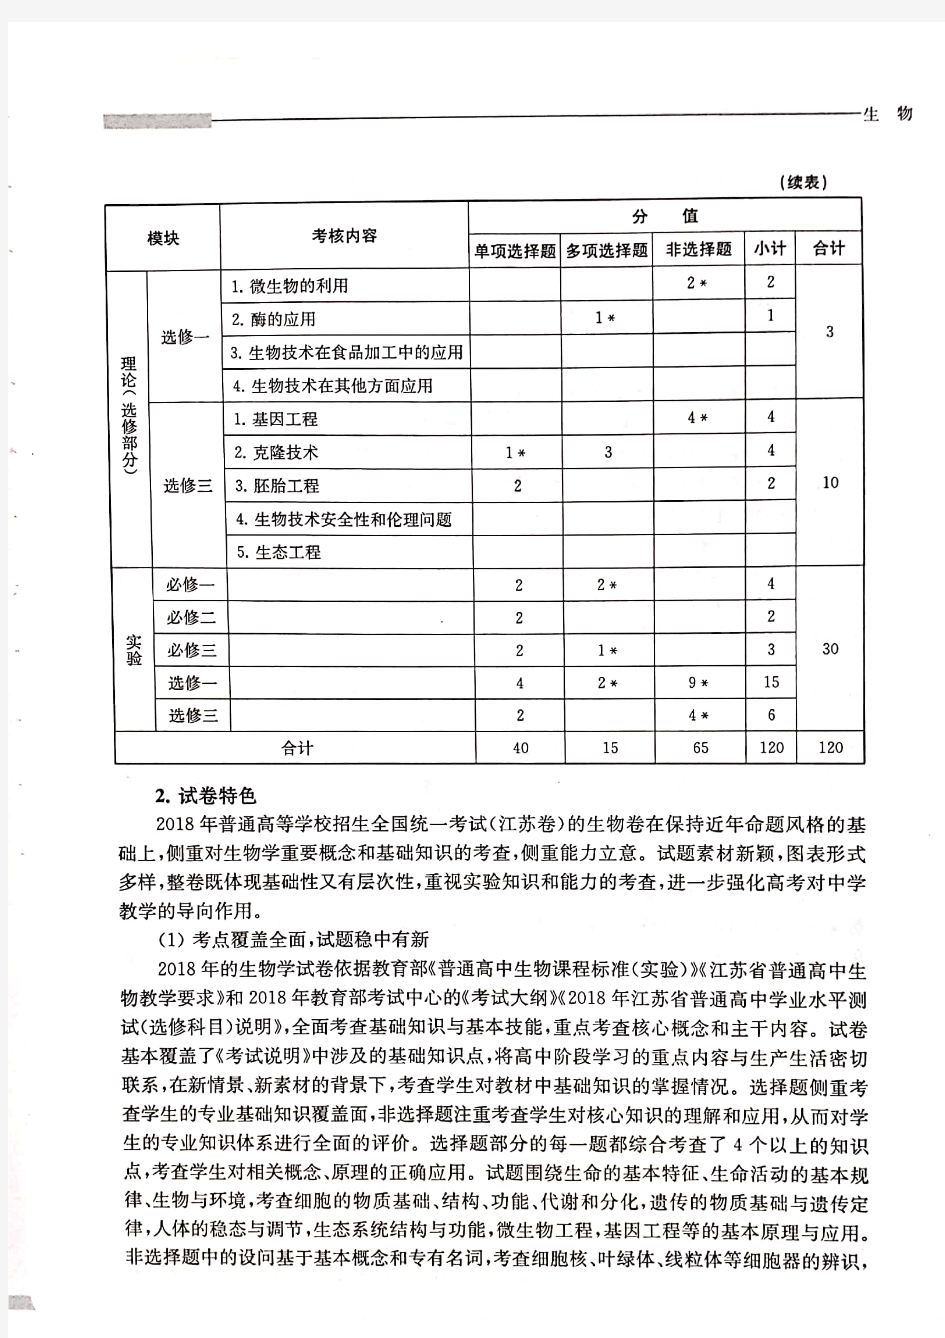 2018年江苏高考试题分析